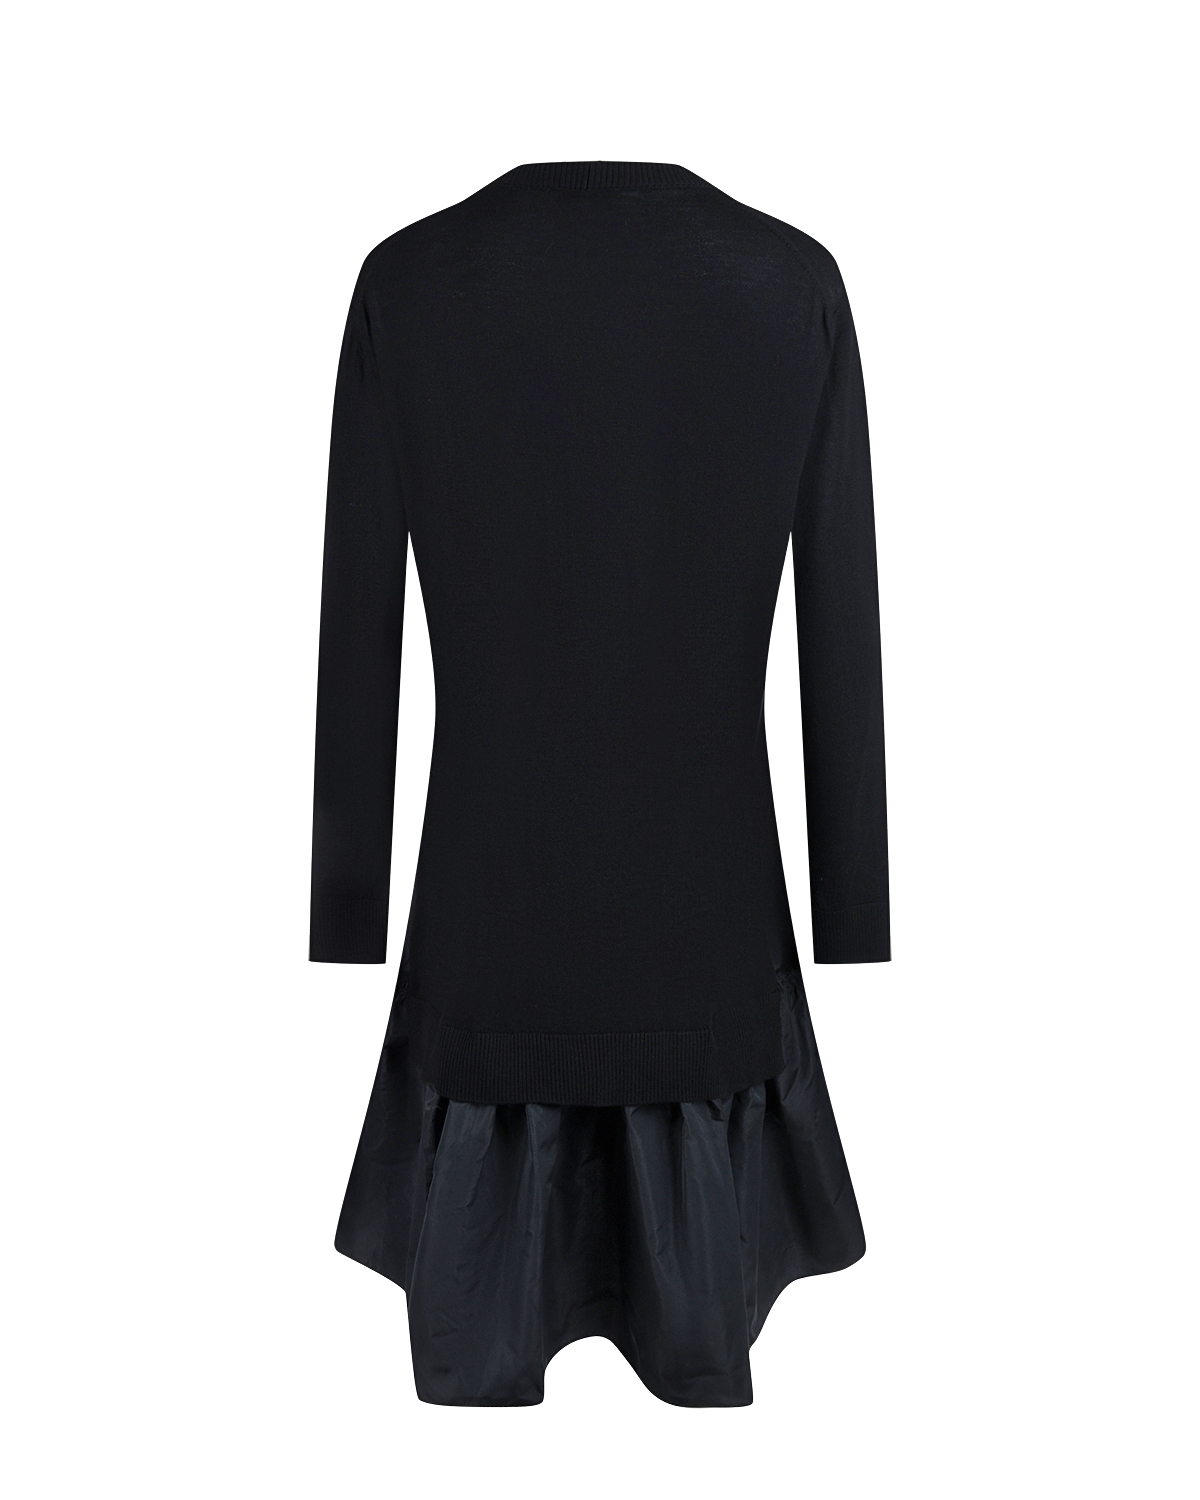 Трикотажное платье черного цвета Vivetta, размер 42 - фото 5